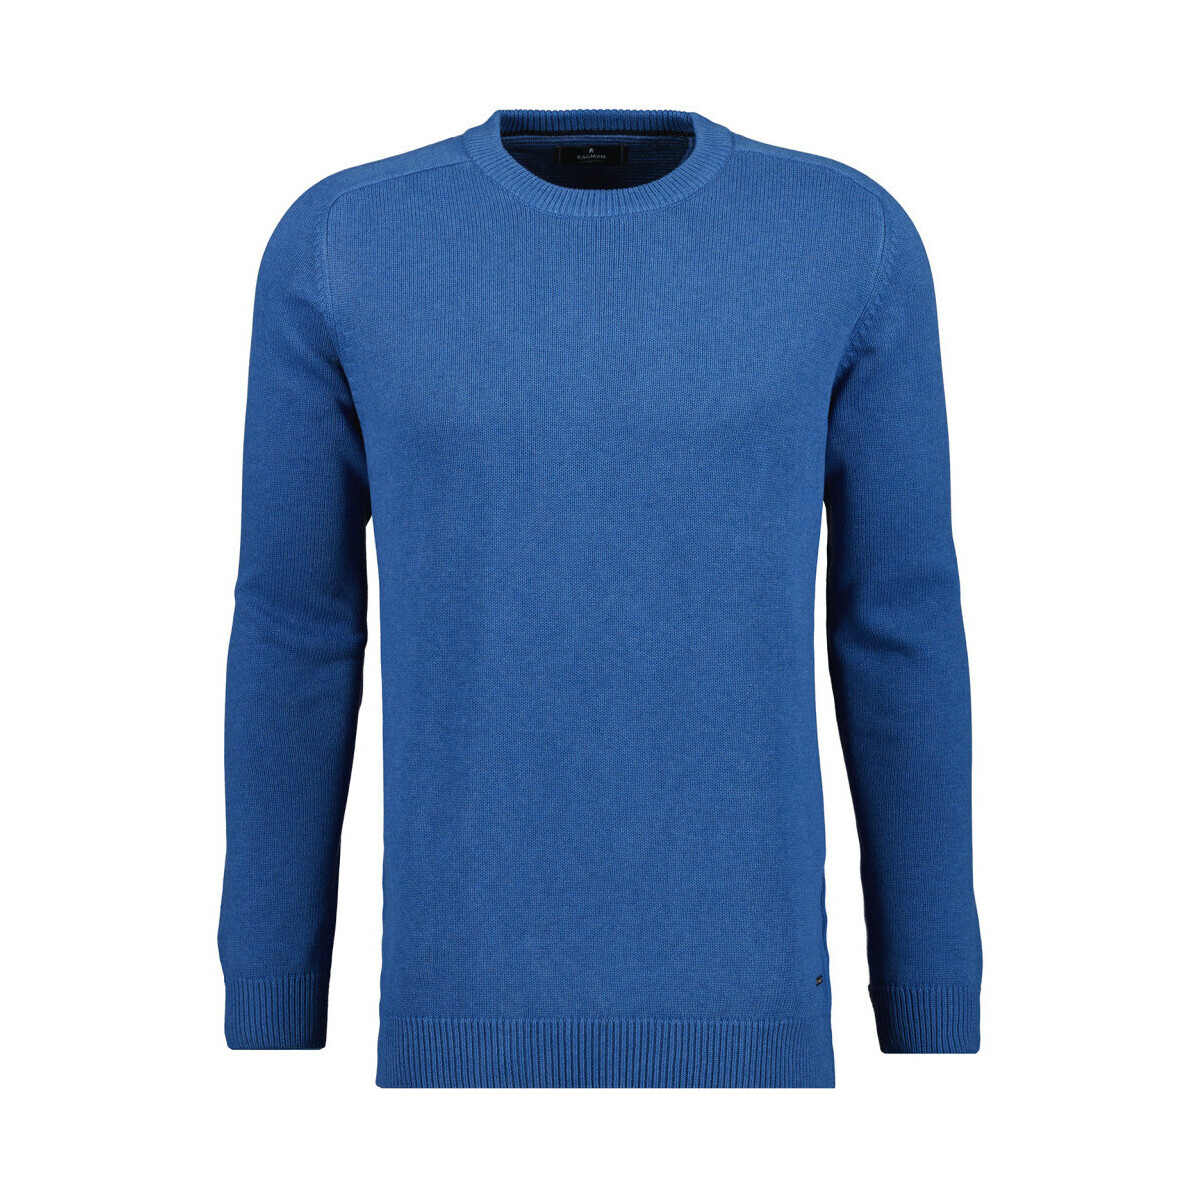 Ragman PULLOVER Blu Abbigliamento - 51,00 ! - gratuita | Maglioni € Consegna Spartoo.it Uomo